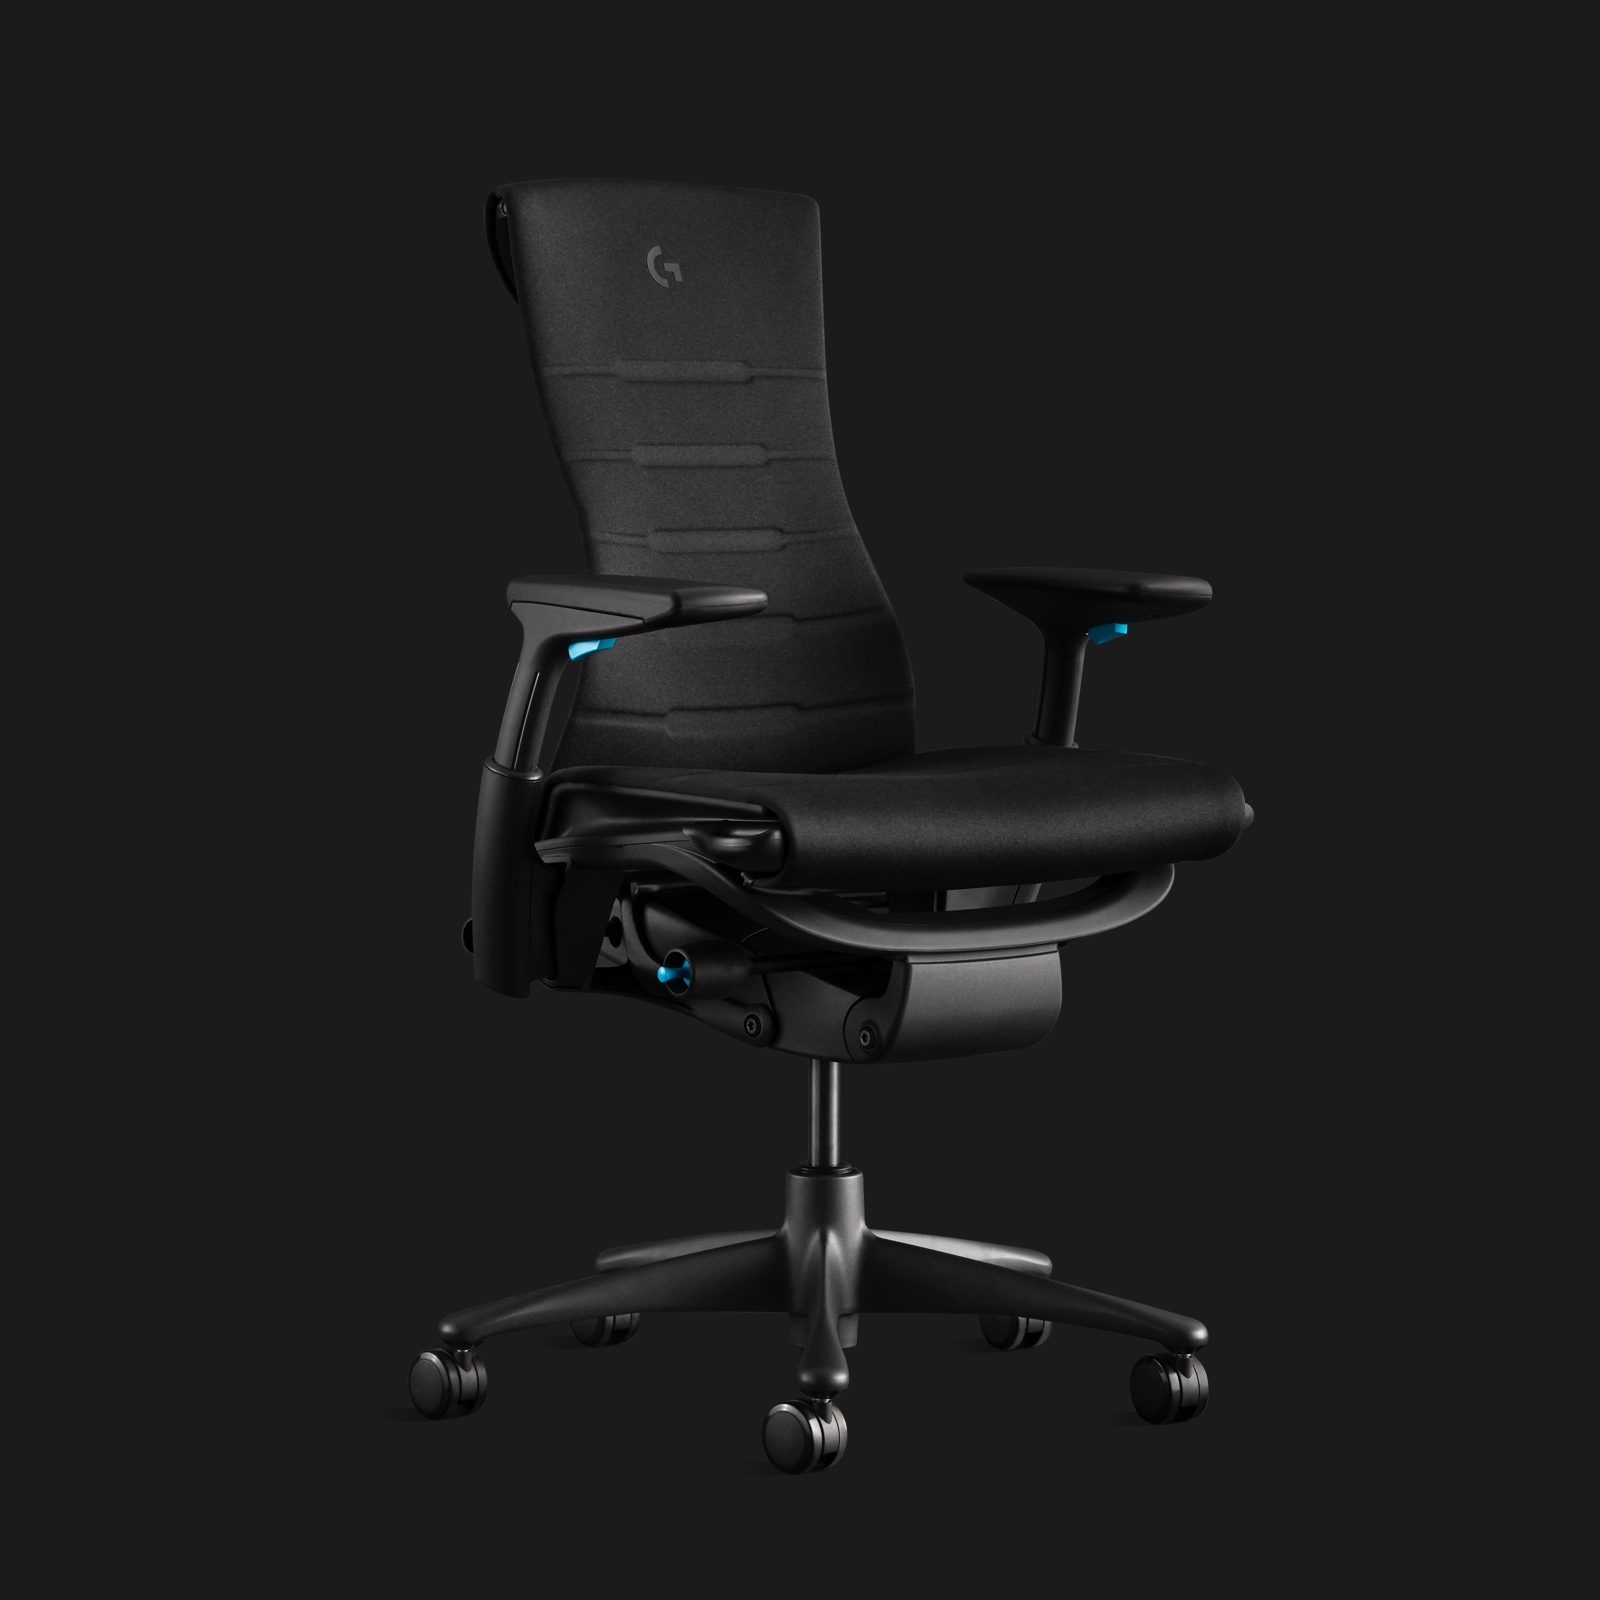 Cadeira para games Embody em cinza escuro com estrutura em ciano e logotipo Logitech G gravado, mostrada em ângulo em fundo preto.